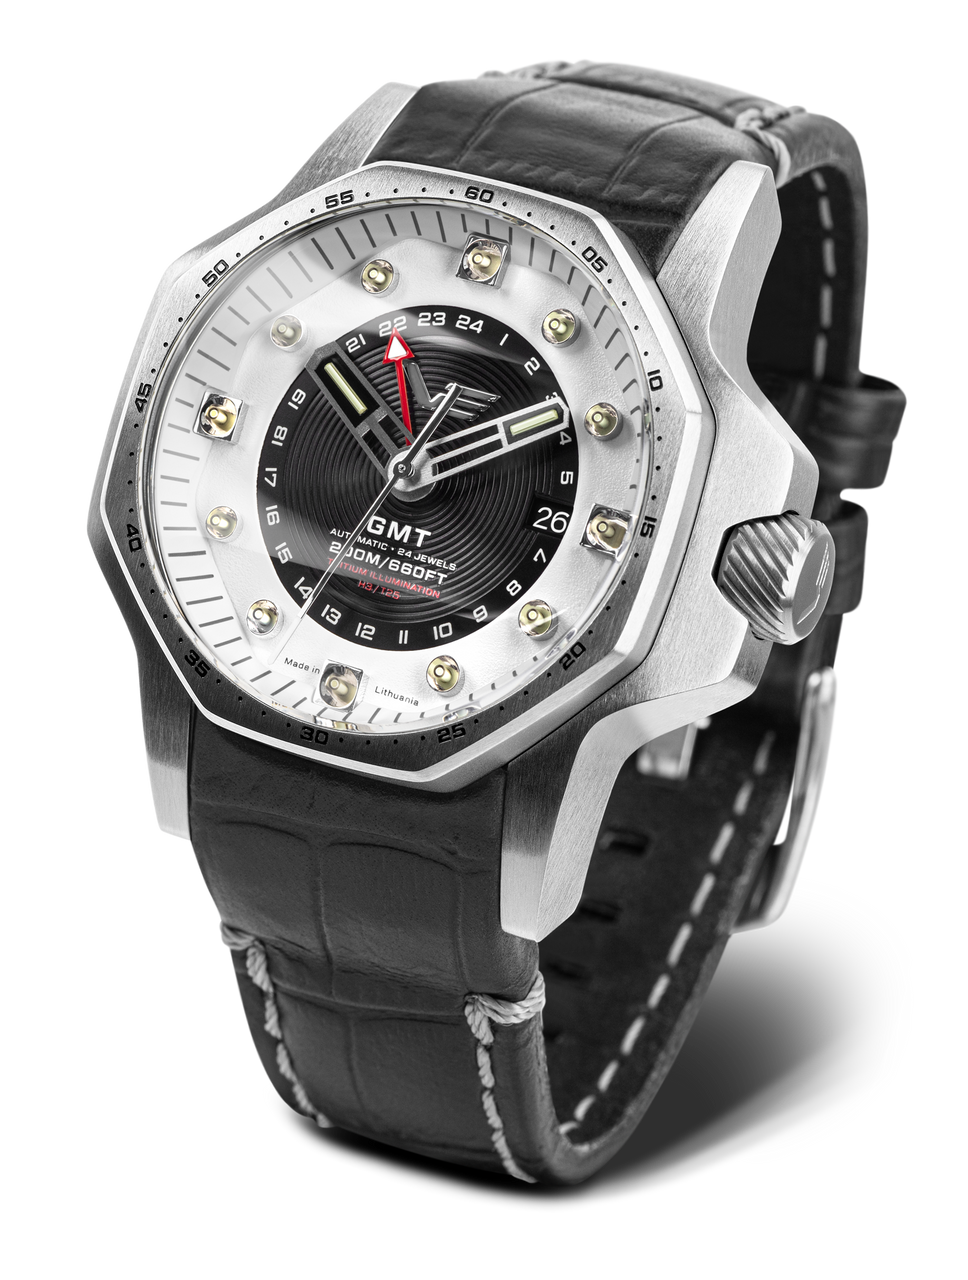 Vostok-Europe Atomic Age Enrico Fermi Automatic GMT Watch NH34-640A702